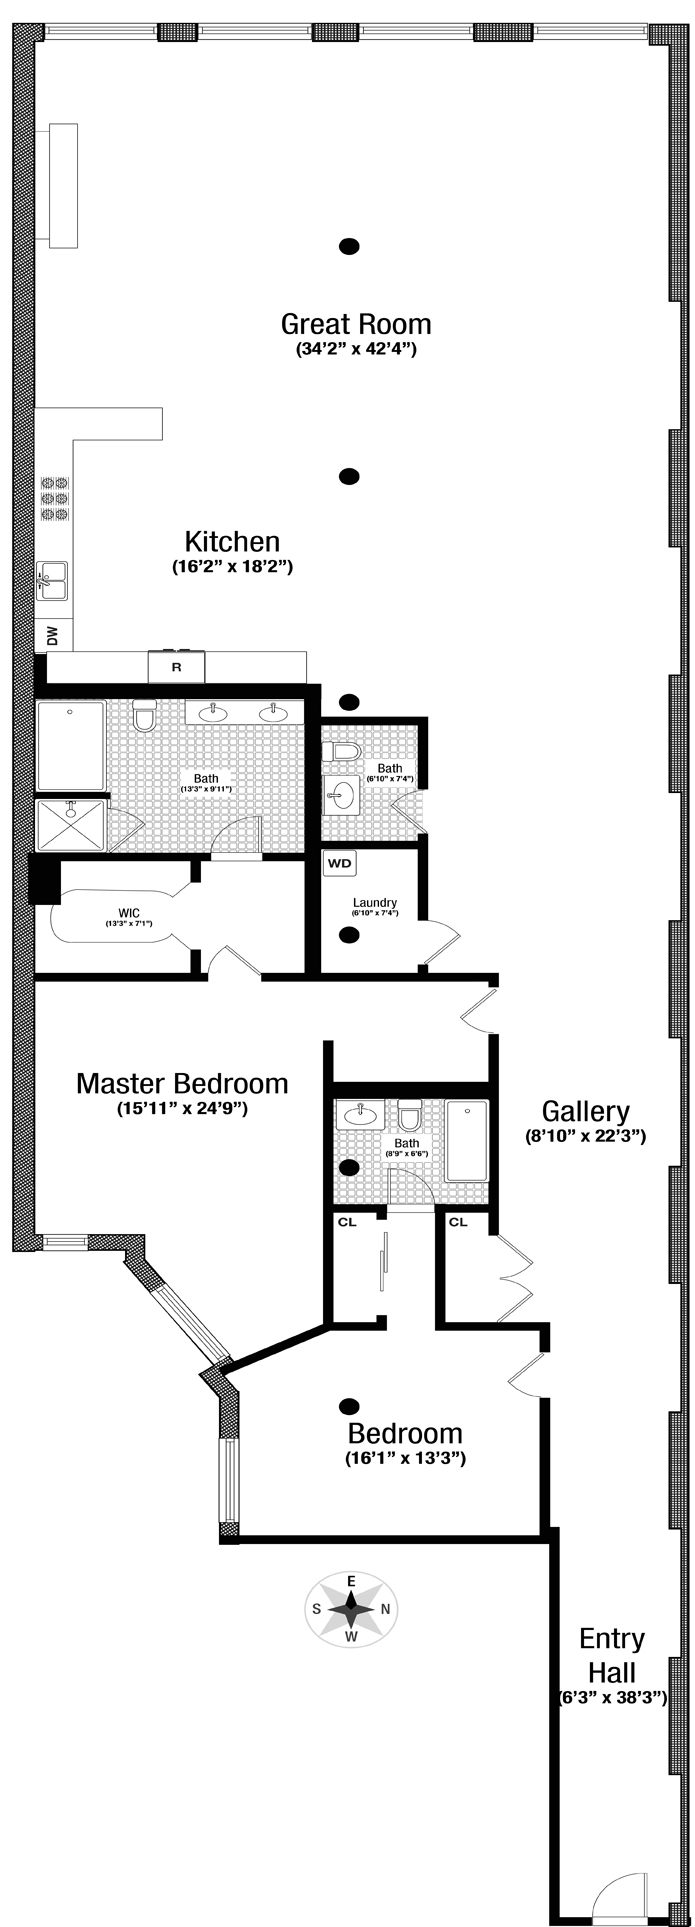 Floorplan for 56 Crosby Street, 3A1